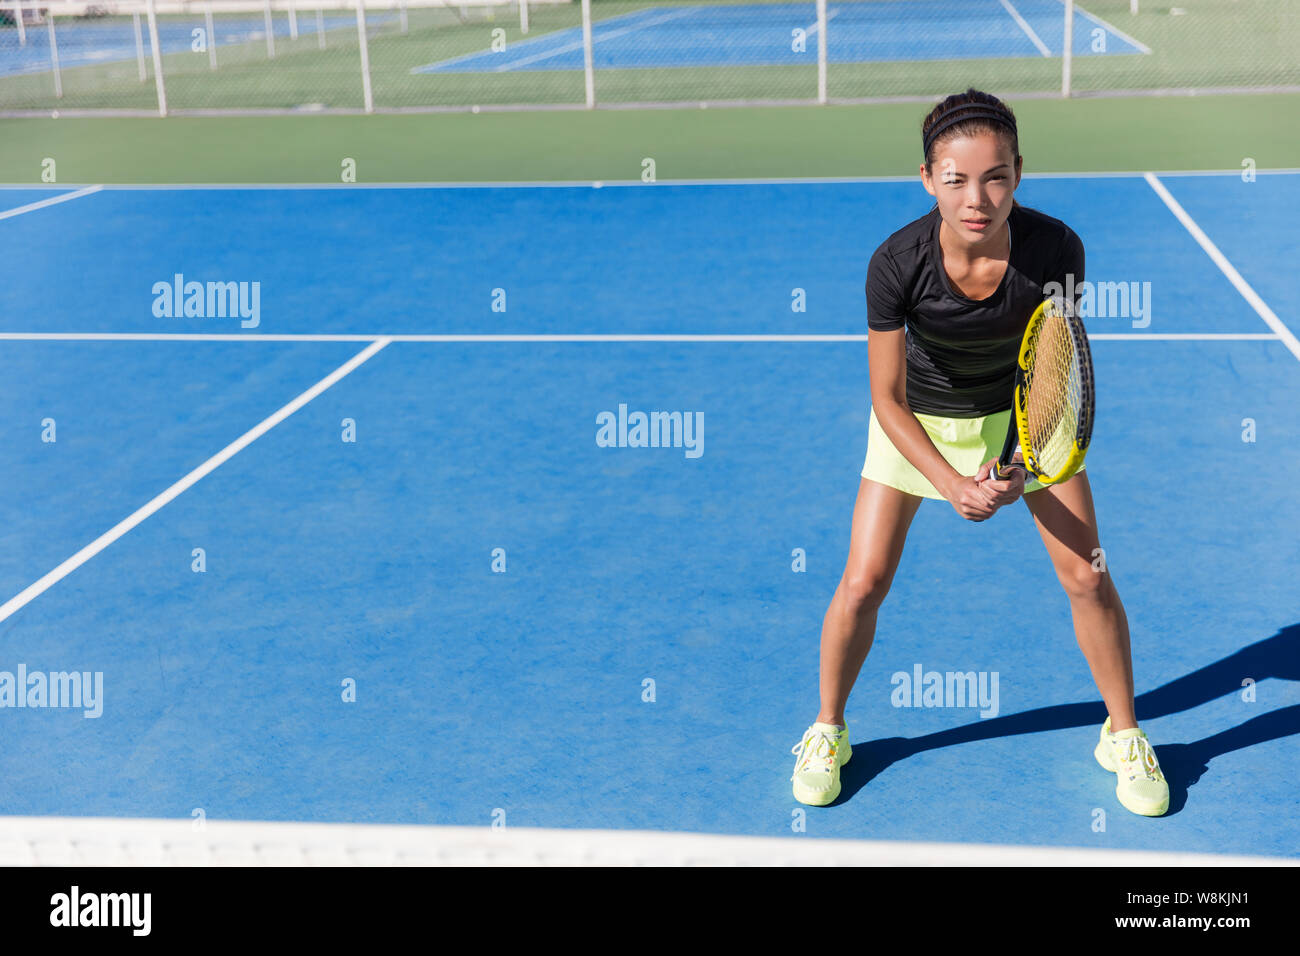 Joueur de tennis femme asiatique prêt à jouer sur bleu disque cour piscine en été en position holding racket portant costume avec jupe et chaussures. La détermination et la concentration de l'athlète féminine concept. Banque D'Images